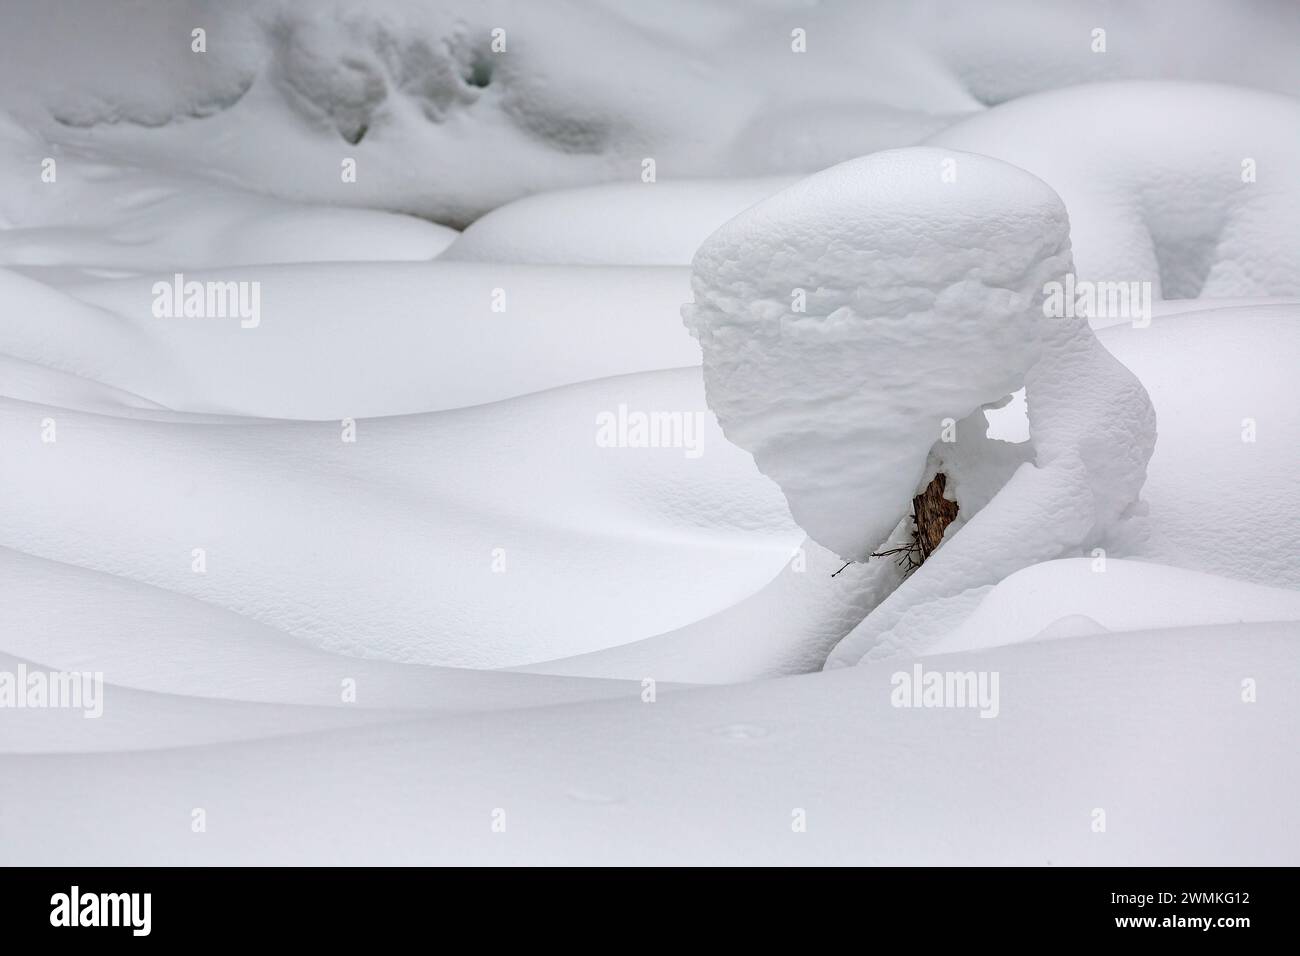 Gros plan d'un petit arbre à feuilles persistantes recouvert de neige créant une sculpture naturelle dans une scène enneigée ; Lake Louise, Alberta, Canada Banque D'Images